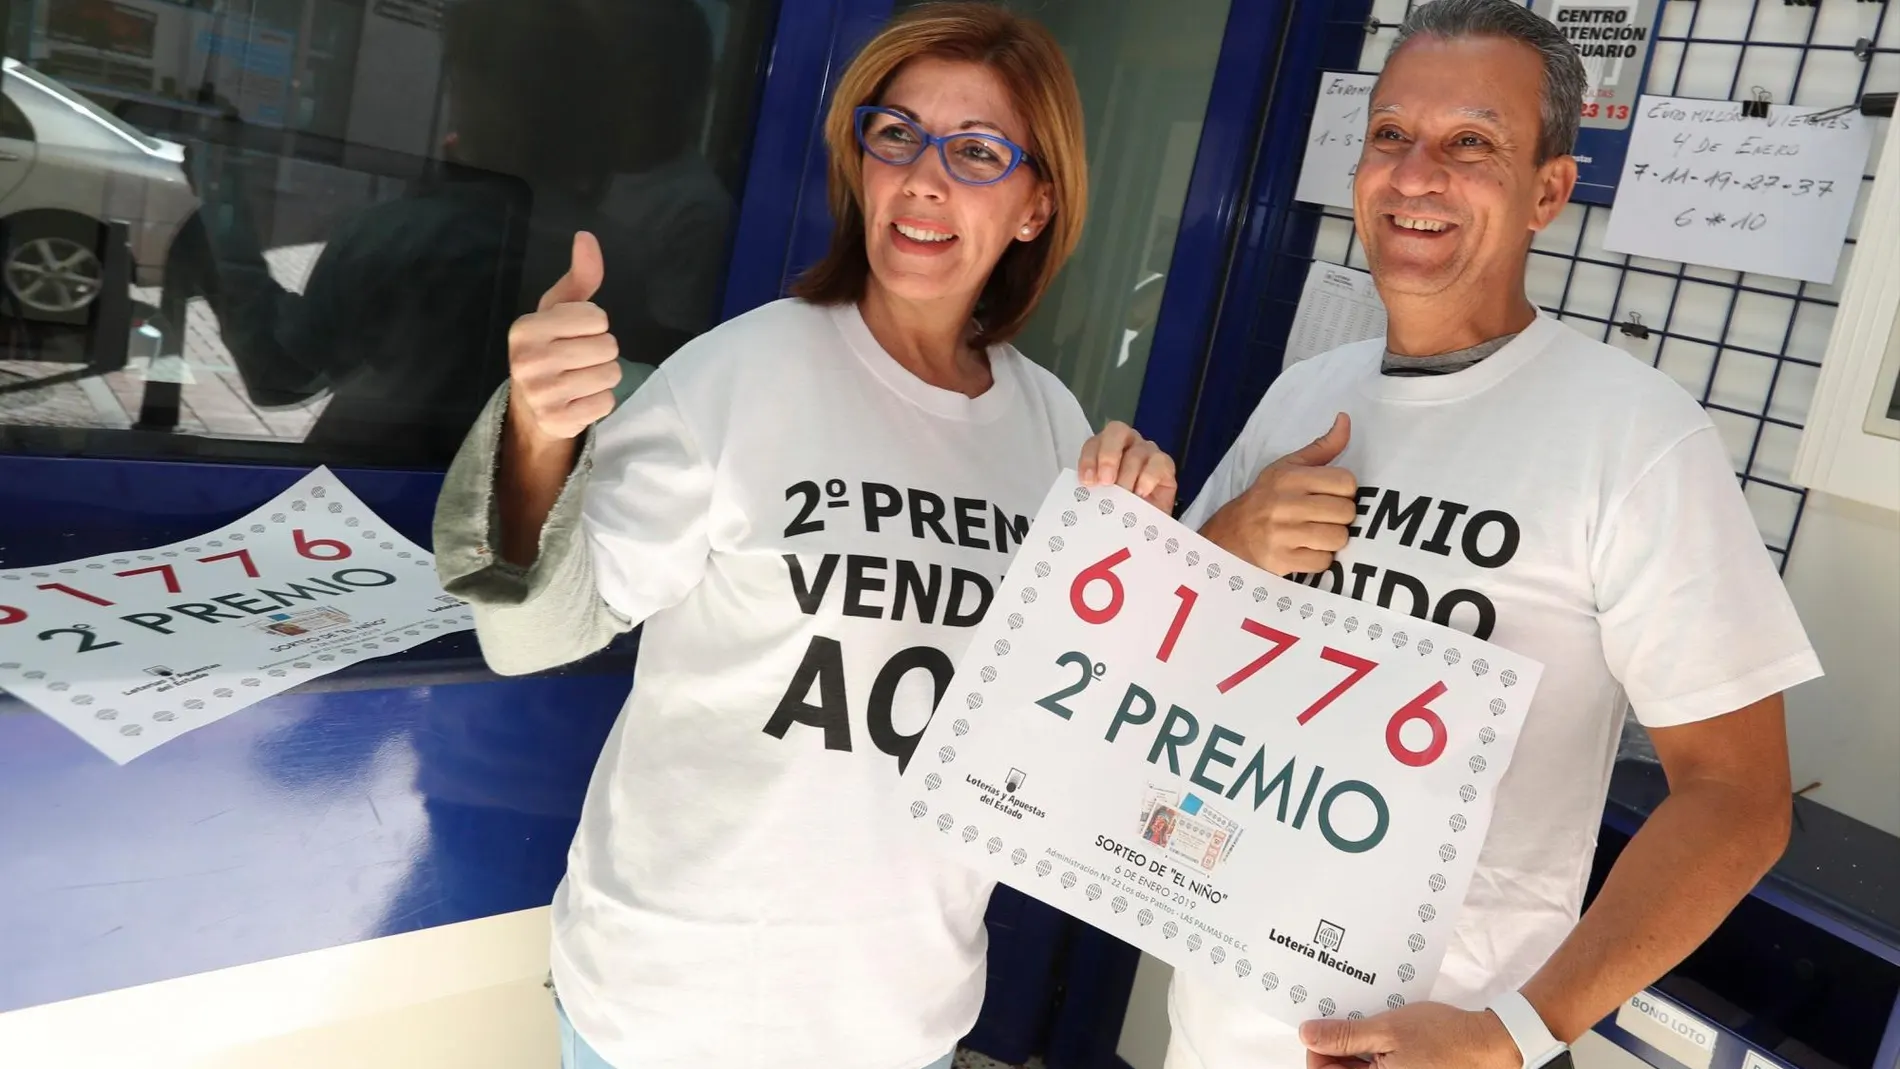 La titular de la administración de lotería nº 22 "Los dos Patitos"de Las Palmas de Gran Canaria y su marido celebran el segundo premio de la lotería de El Niño que también vendieron en su administración. / Foto: Efe